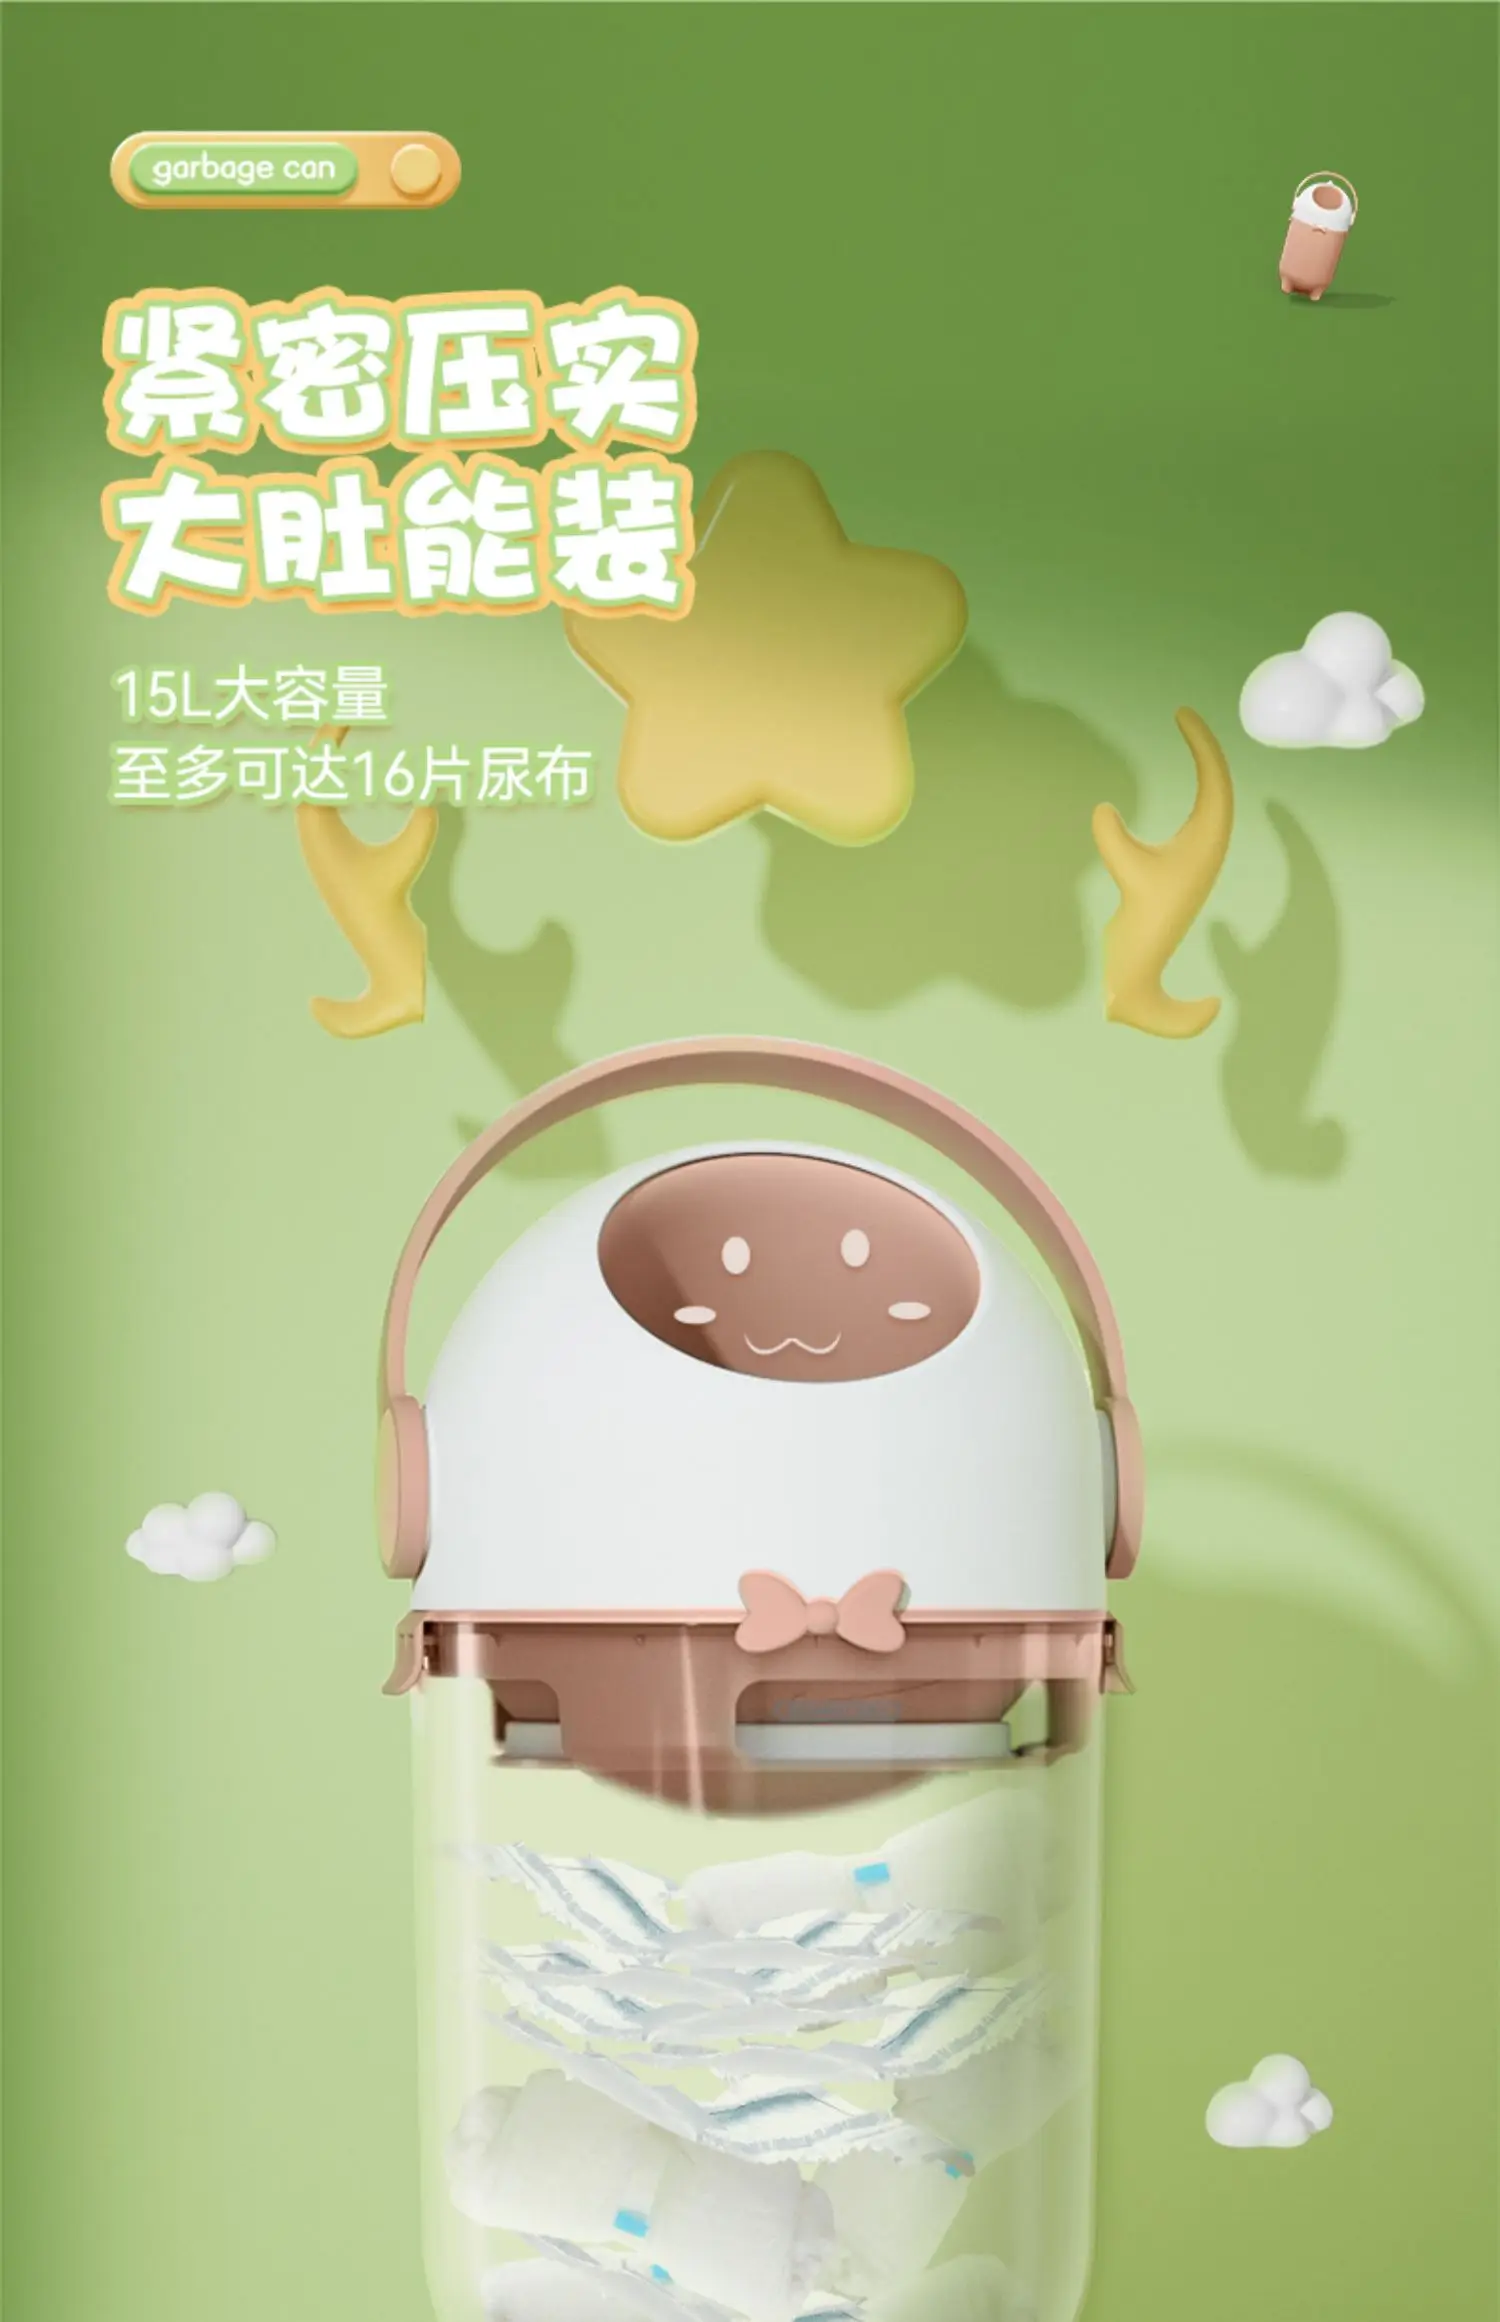 Mülleimer Haushalt Große Schlafzimmer Versiegelt Deodorant Baby Eimer mit  Deckel Baby Windel Lagerung Container - AliExpress